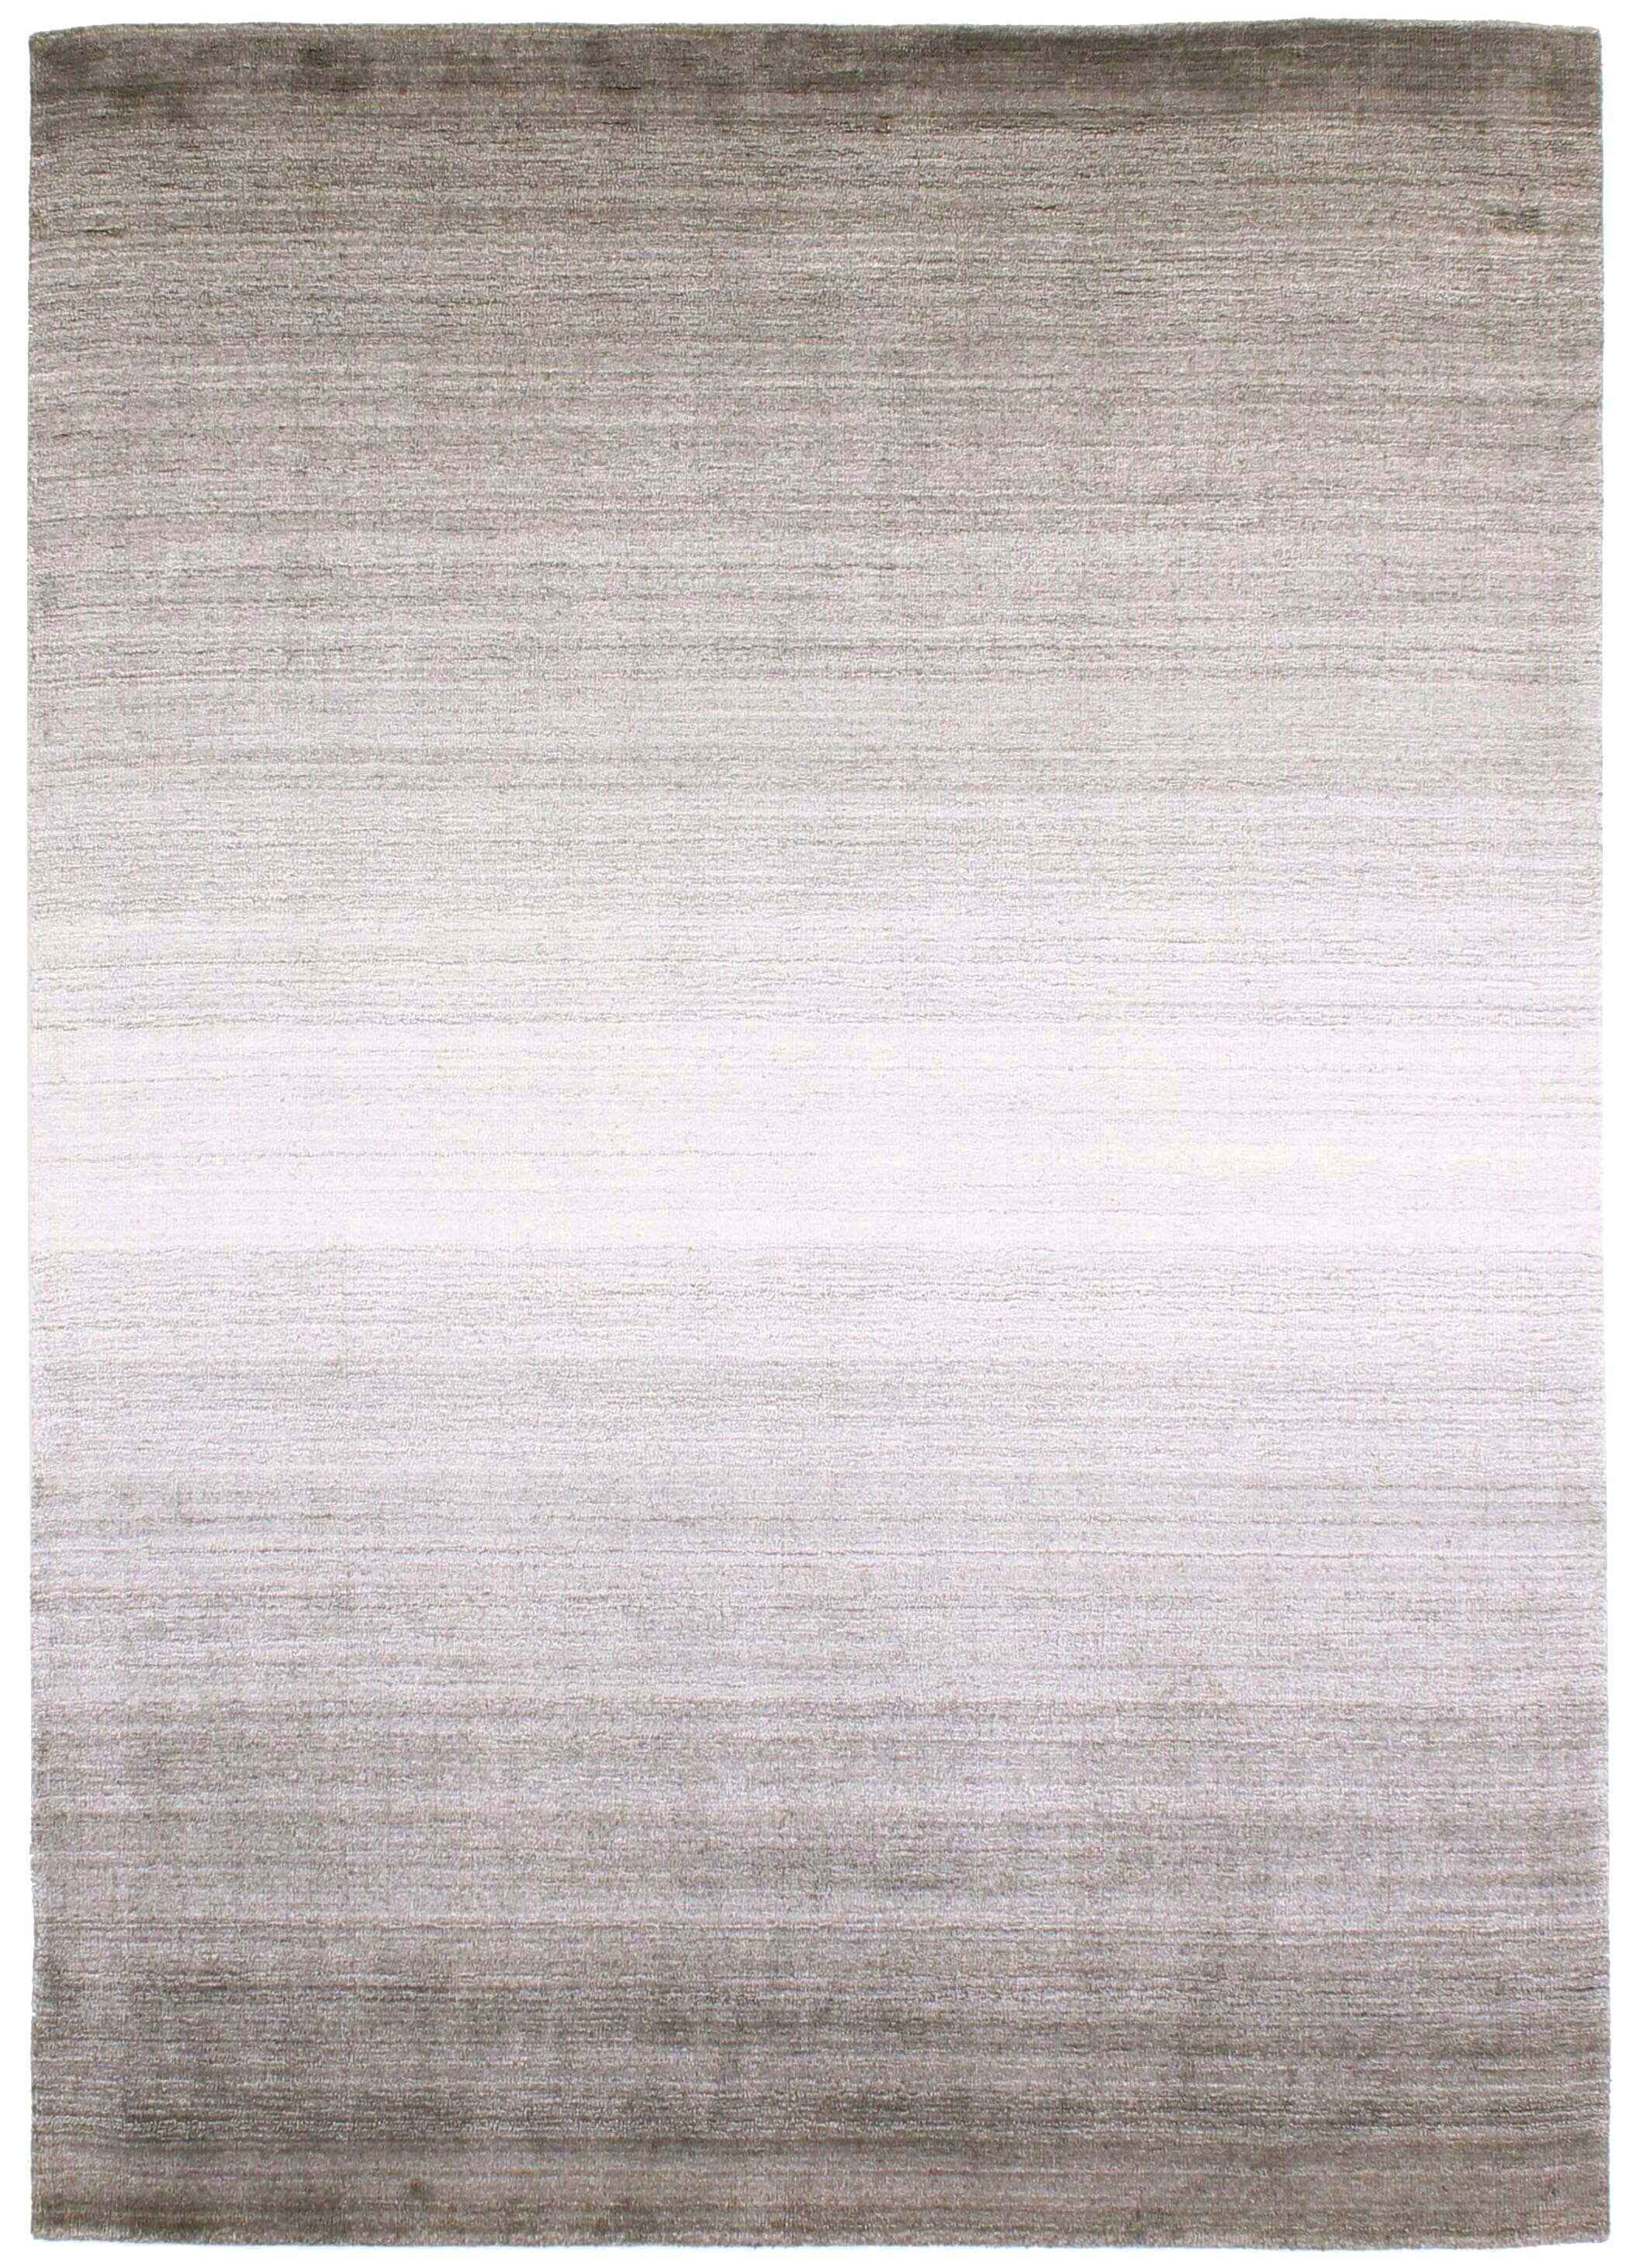 300x250 cm  Indian Wool/Viscose Brown Rug-Porpra, Purple